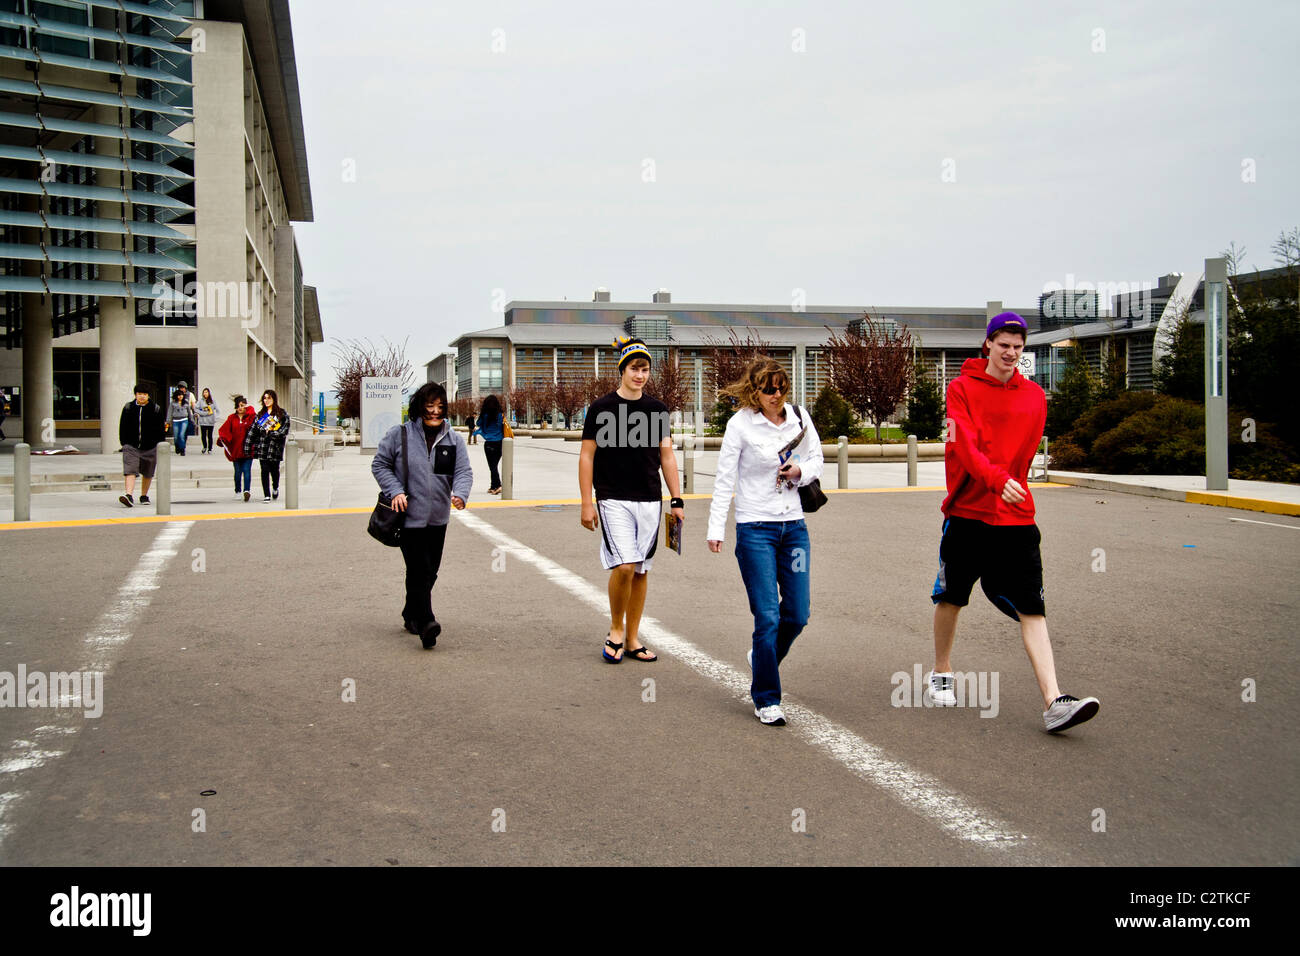 Gli studenti passeggiare al di fuori del leone e Dottie Kolligian biblioteca presso la University of California, Merced. Foto Stock